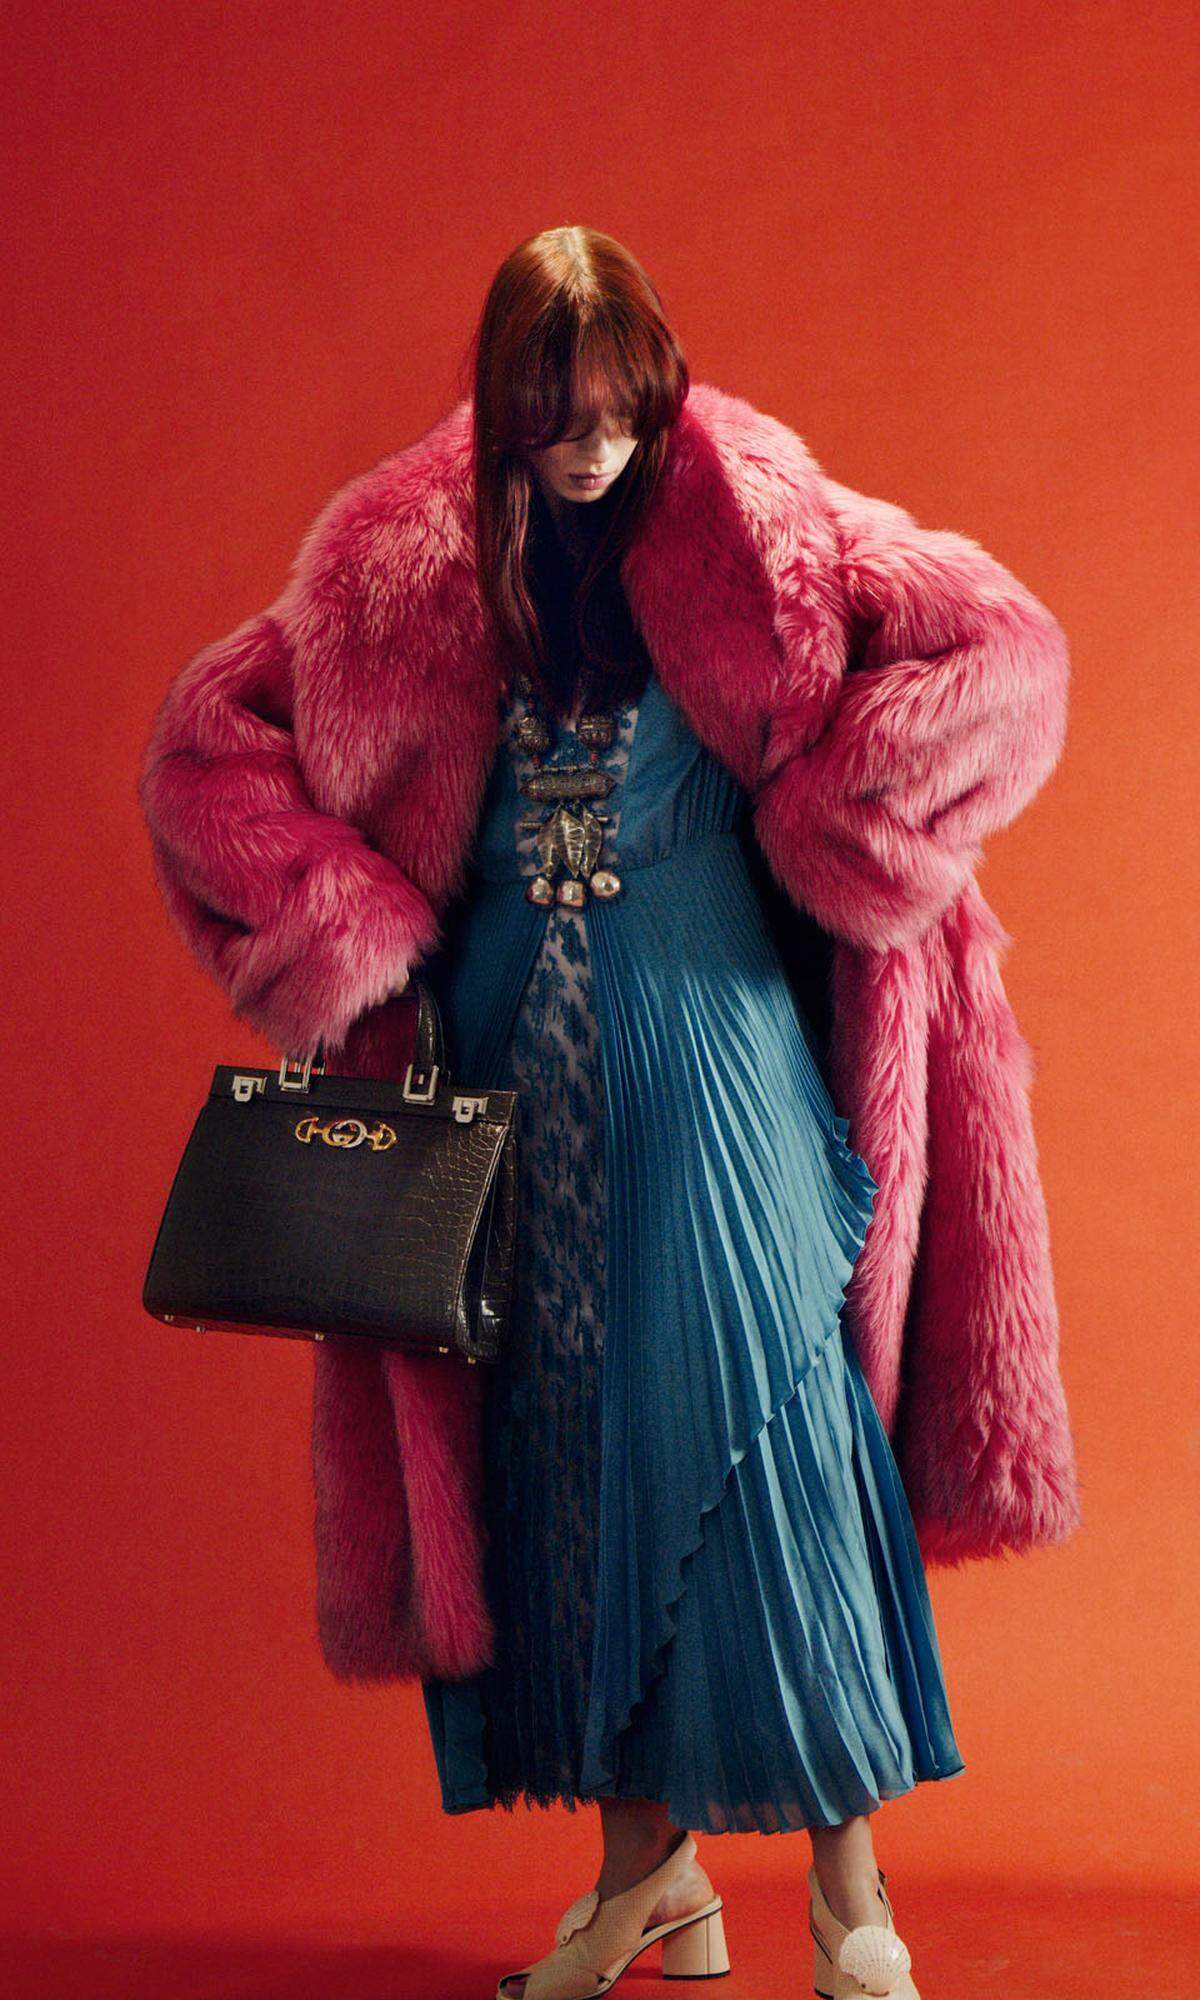 Gucci. Marei trägt ein Plisseekleid in Blau, einen Mantel in Kunstpelz, Pumps und die Tasche „Zumi" in Krokodilleder.